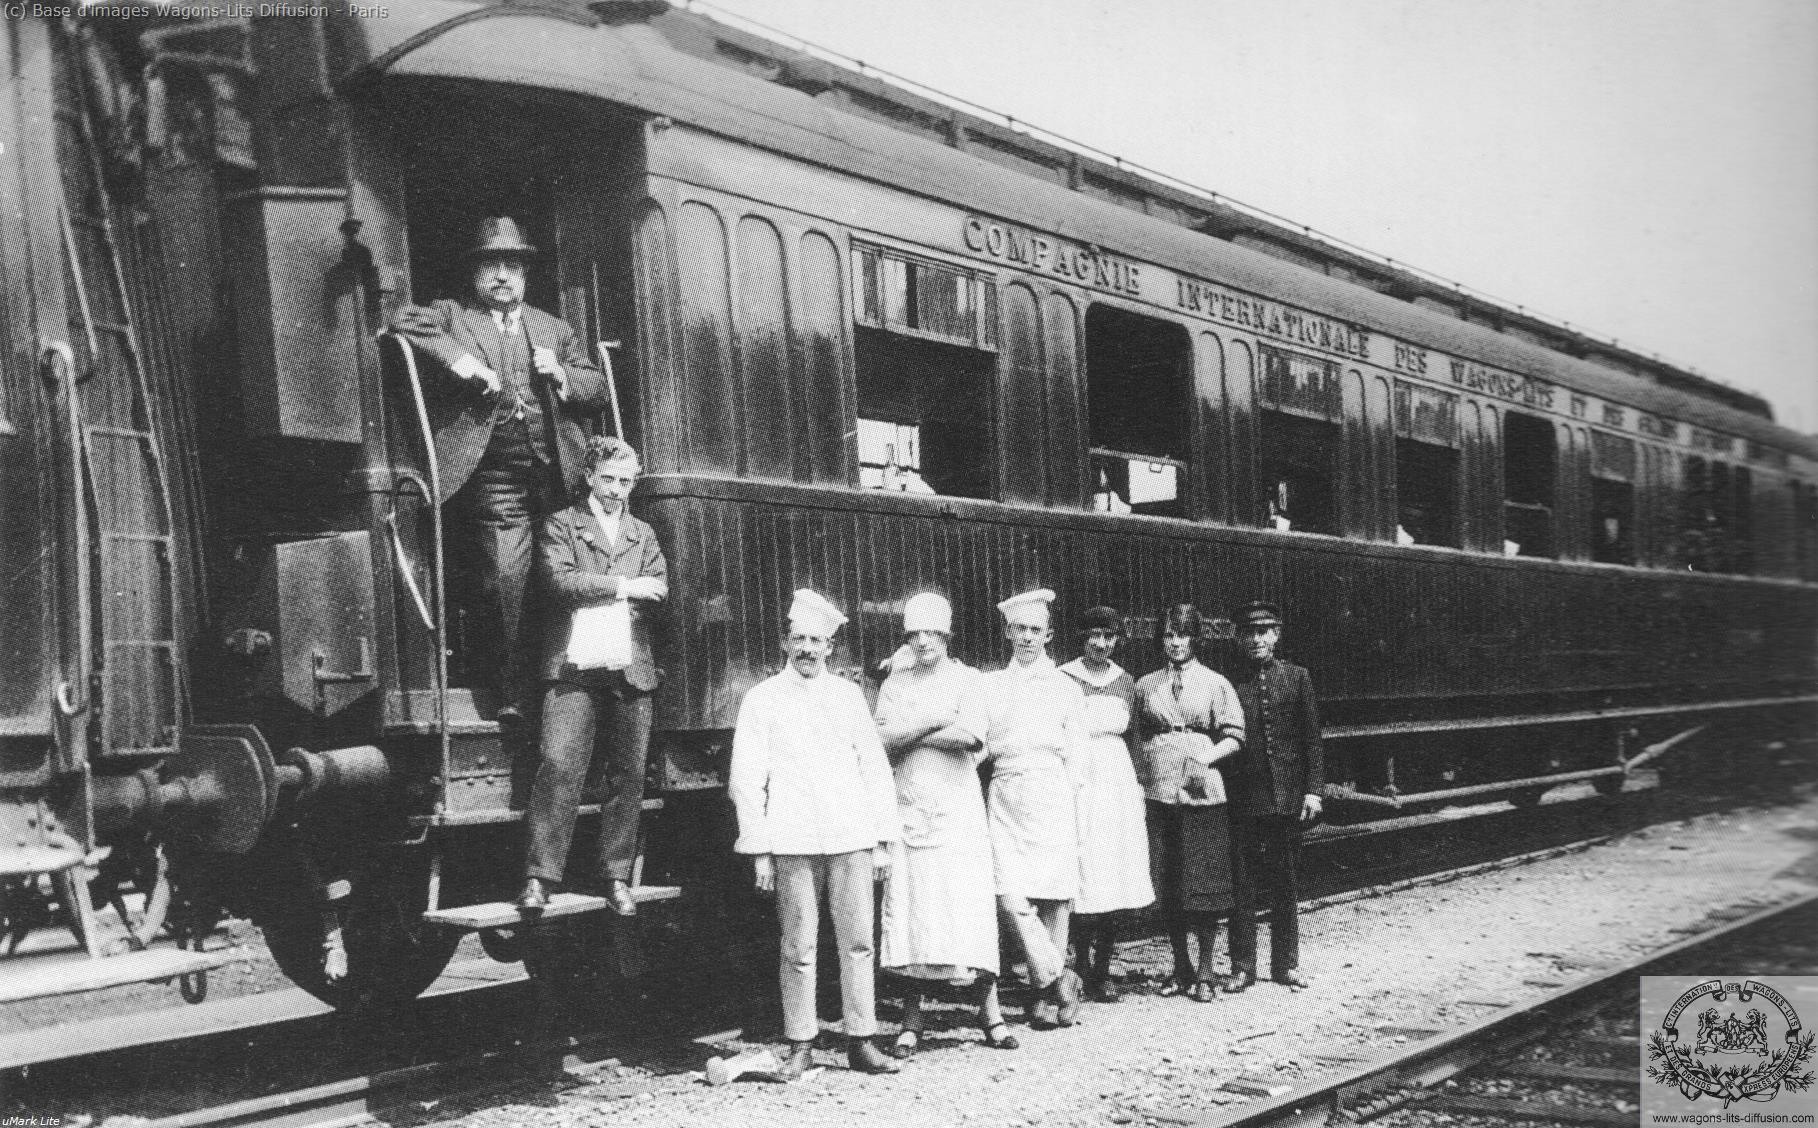 Wl vr teck brigade du train presidentiel en 1919